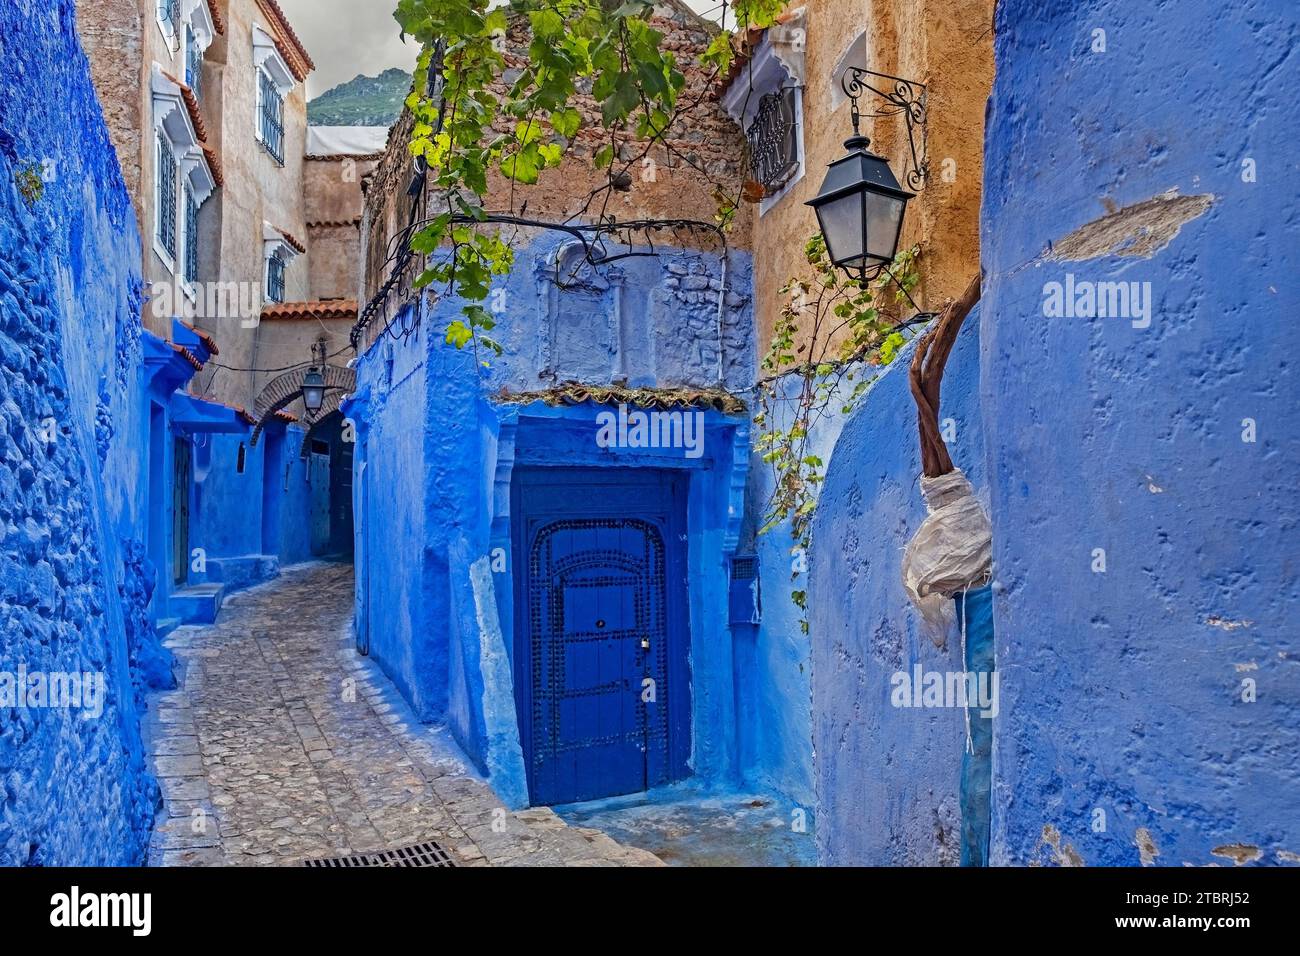 Ruelle étroite avec des murs bleus, des maisons et des portes dans la médina / vieille ville historique de la ville Chefchaouen / Chaouen, Maroc Banque D'Images